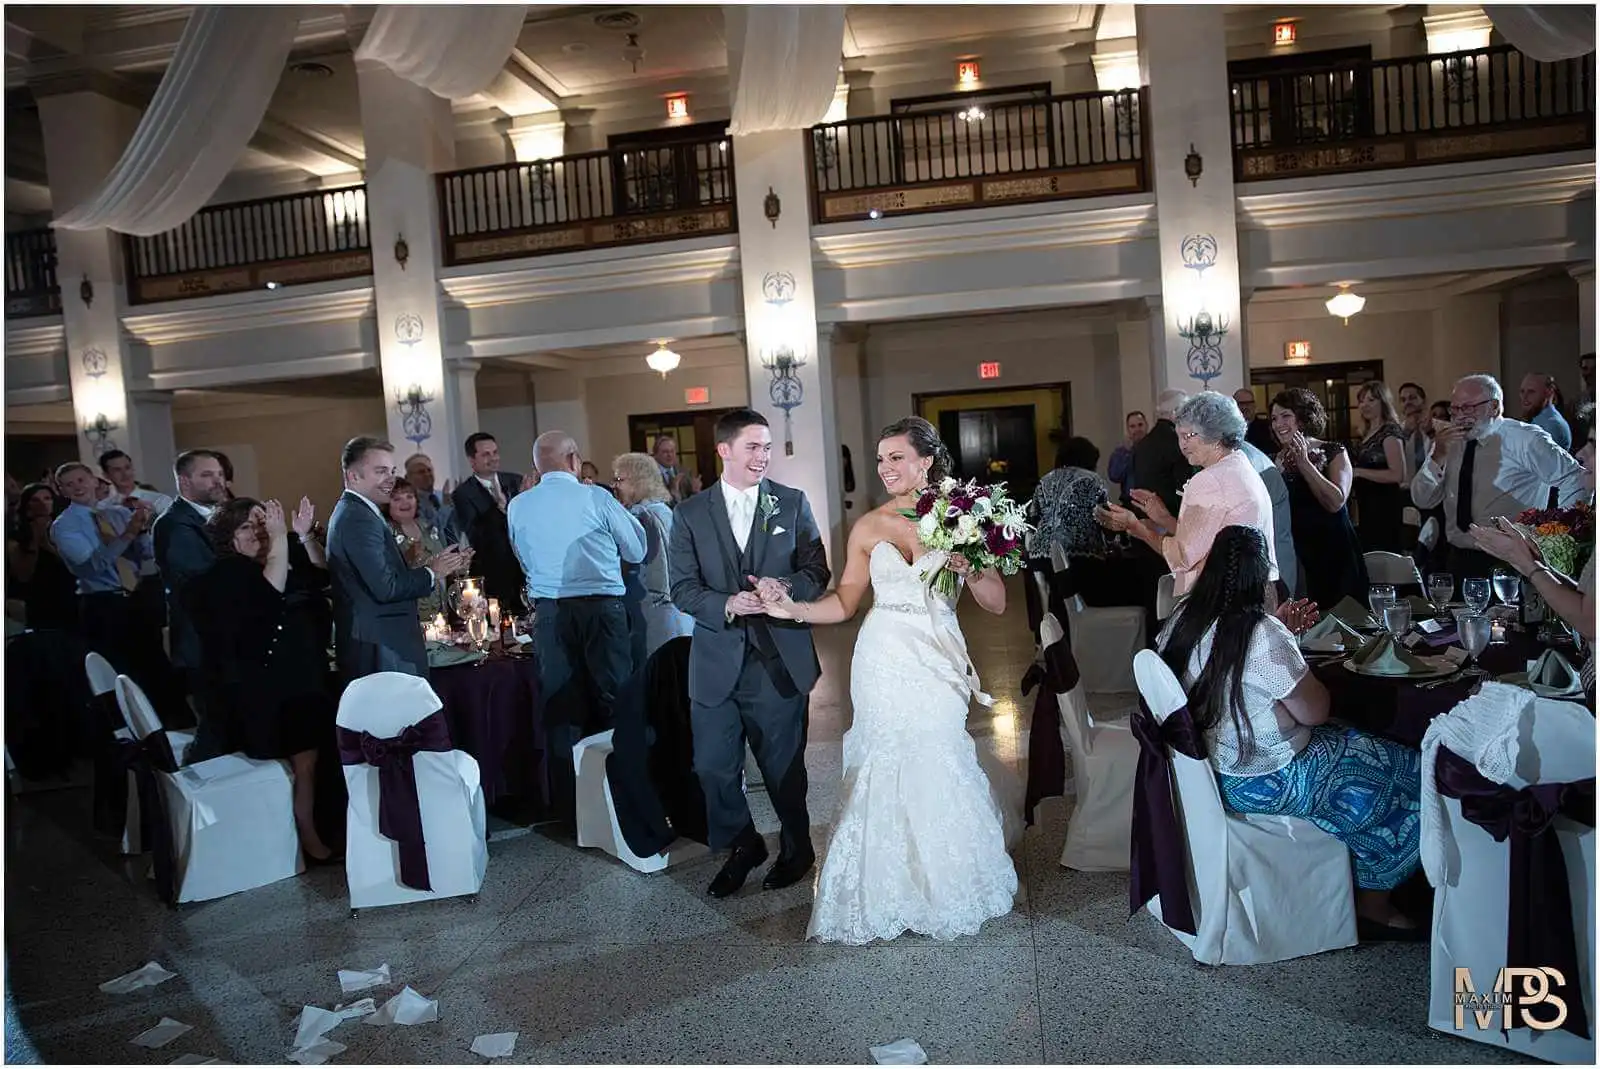 Dayton Wedding Photographers, Masonic Center Wedding Reception